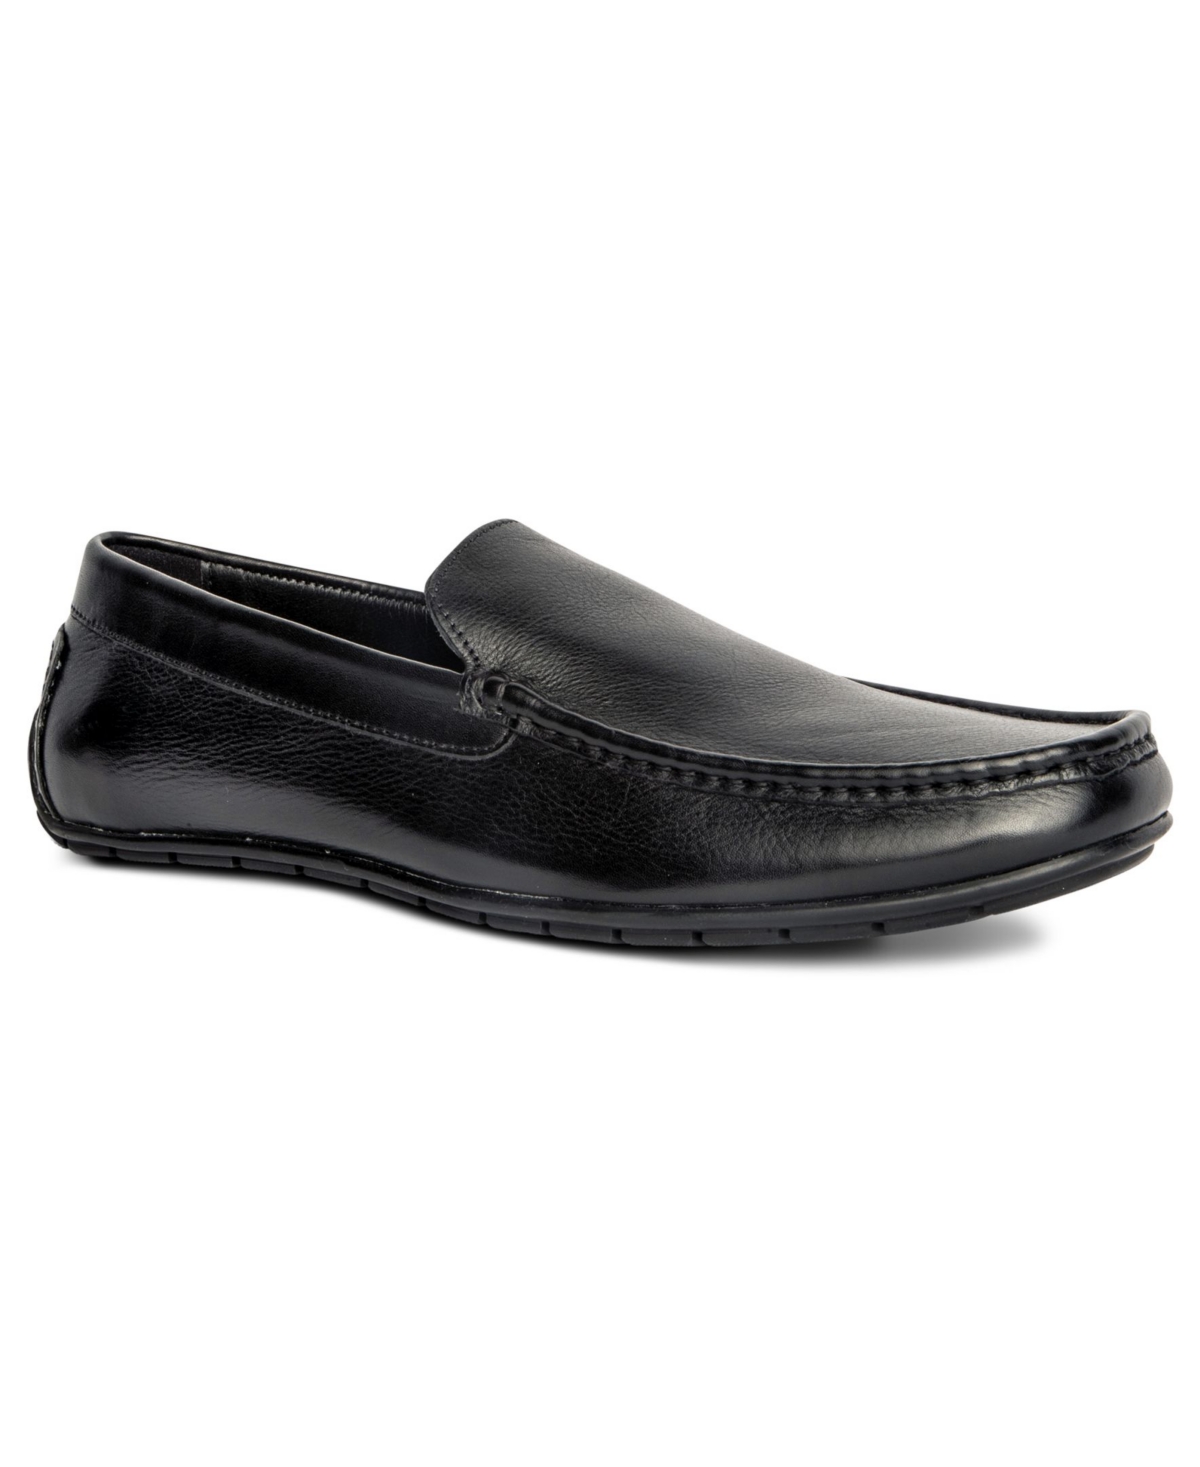 Men's Cleveland Driver Slip-On Leather Loafer - Black